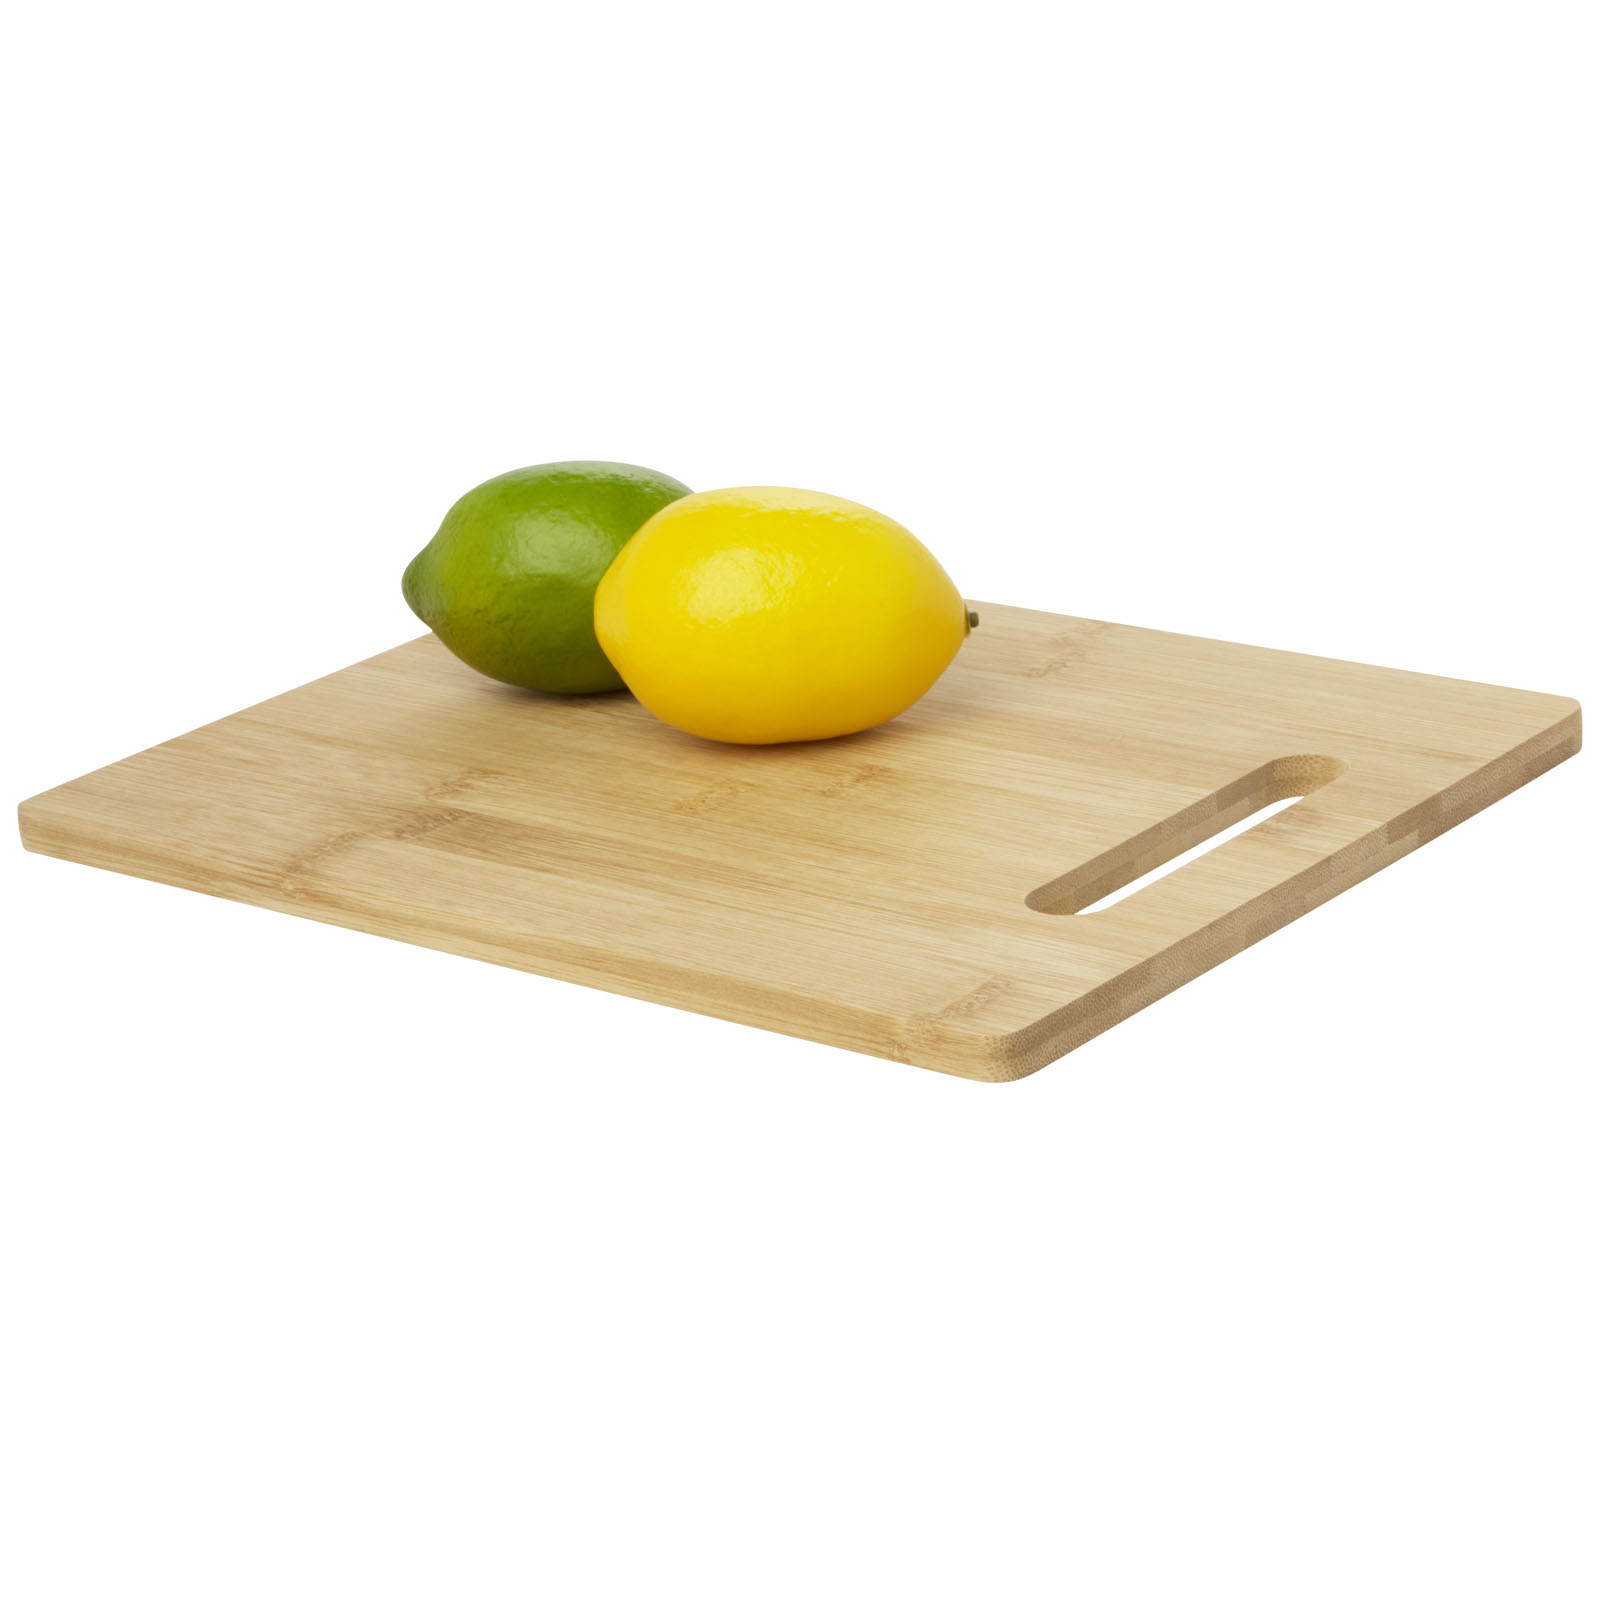 Home & Kitchen - Basso bamboo cutting board